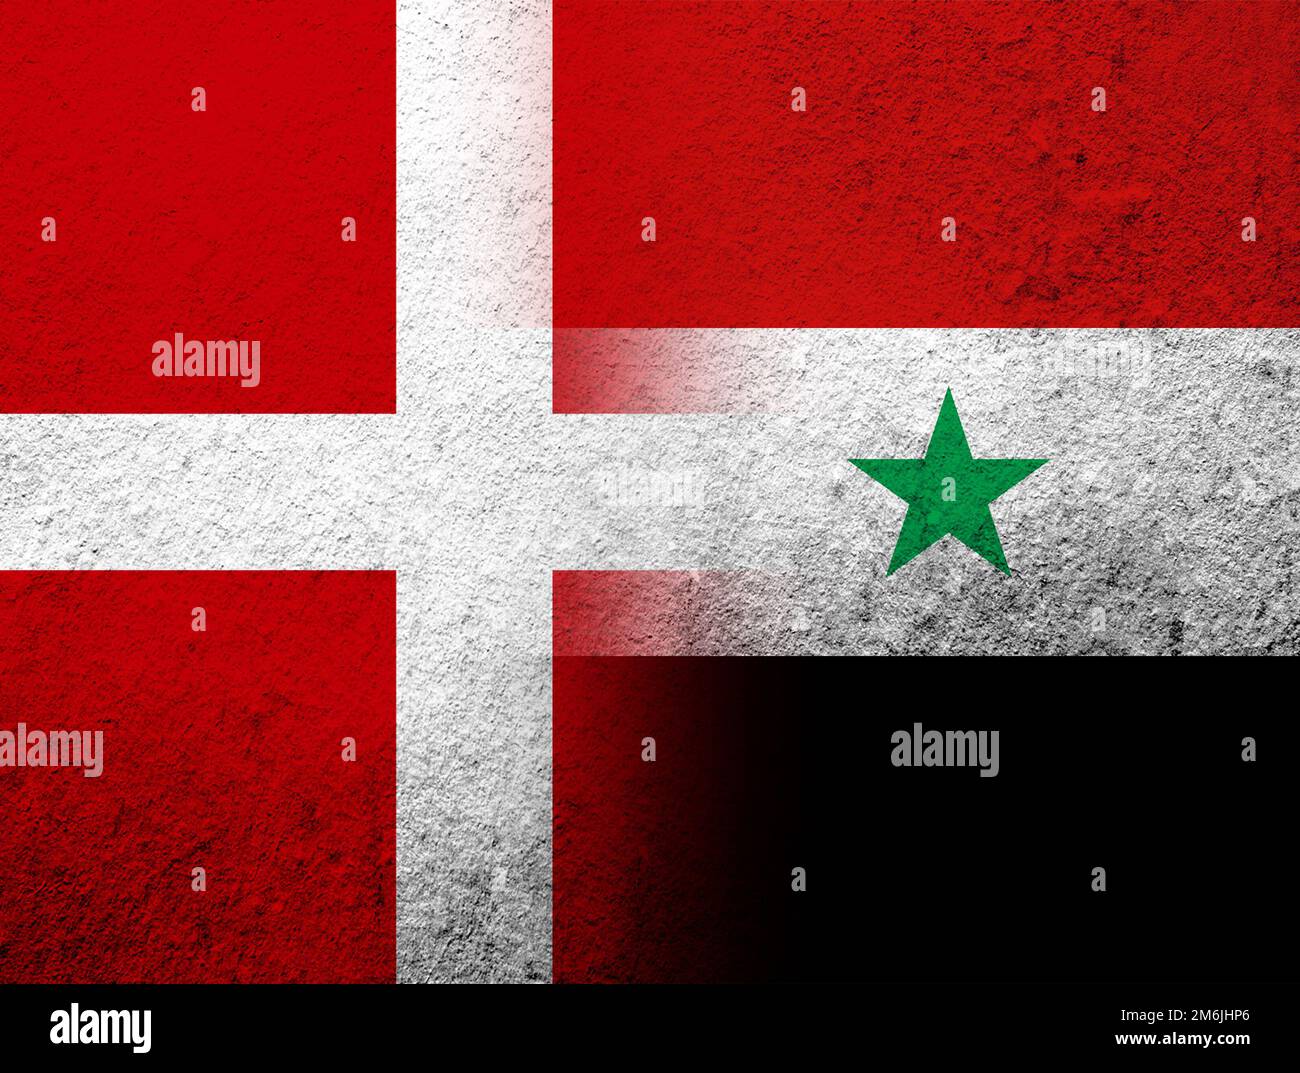 Die Nationalflagge des Königreichs Dänemark mit der Nationalflagge der Arabischen Republik Syrien. Grunge Hintergrund Stockfoto